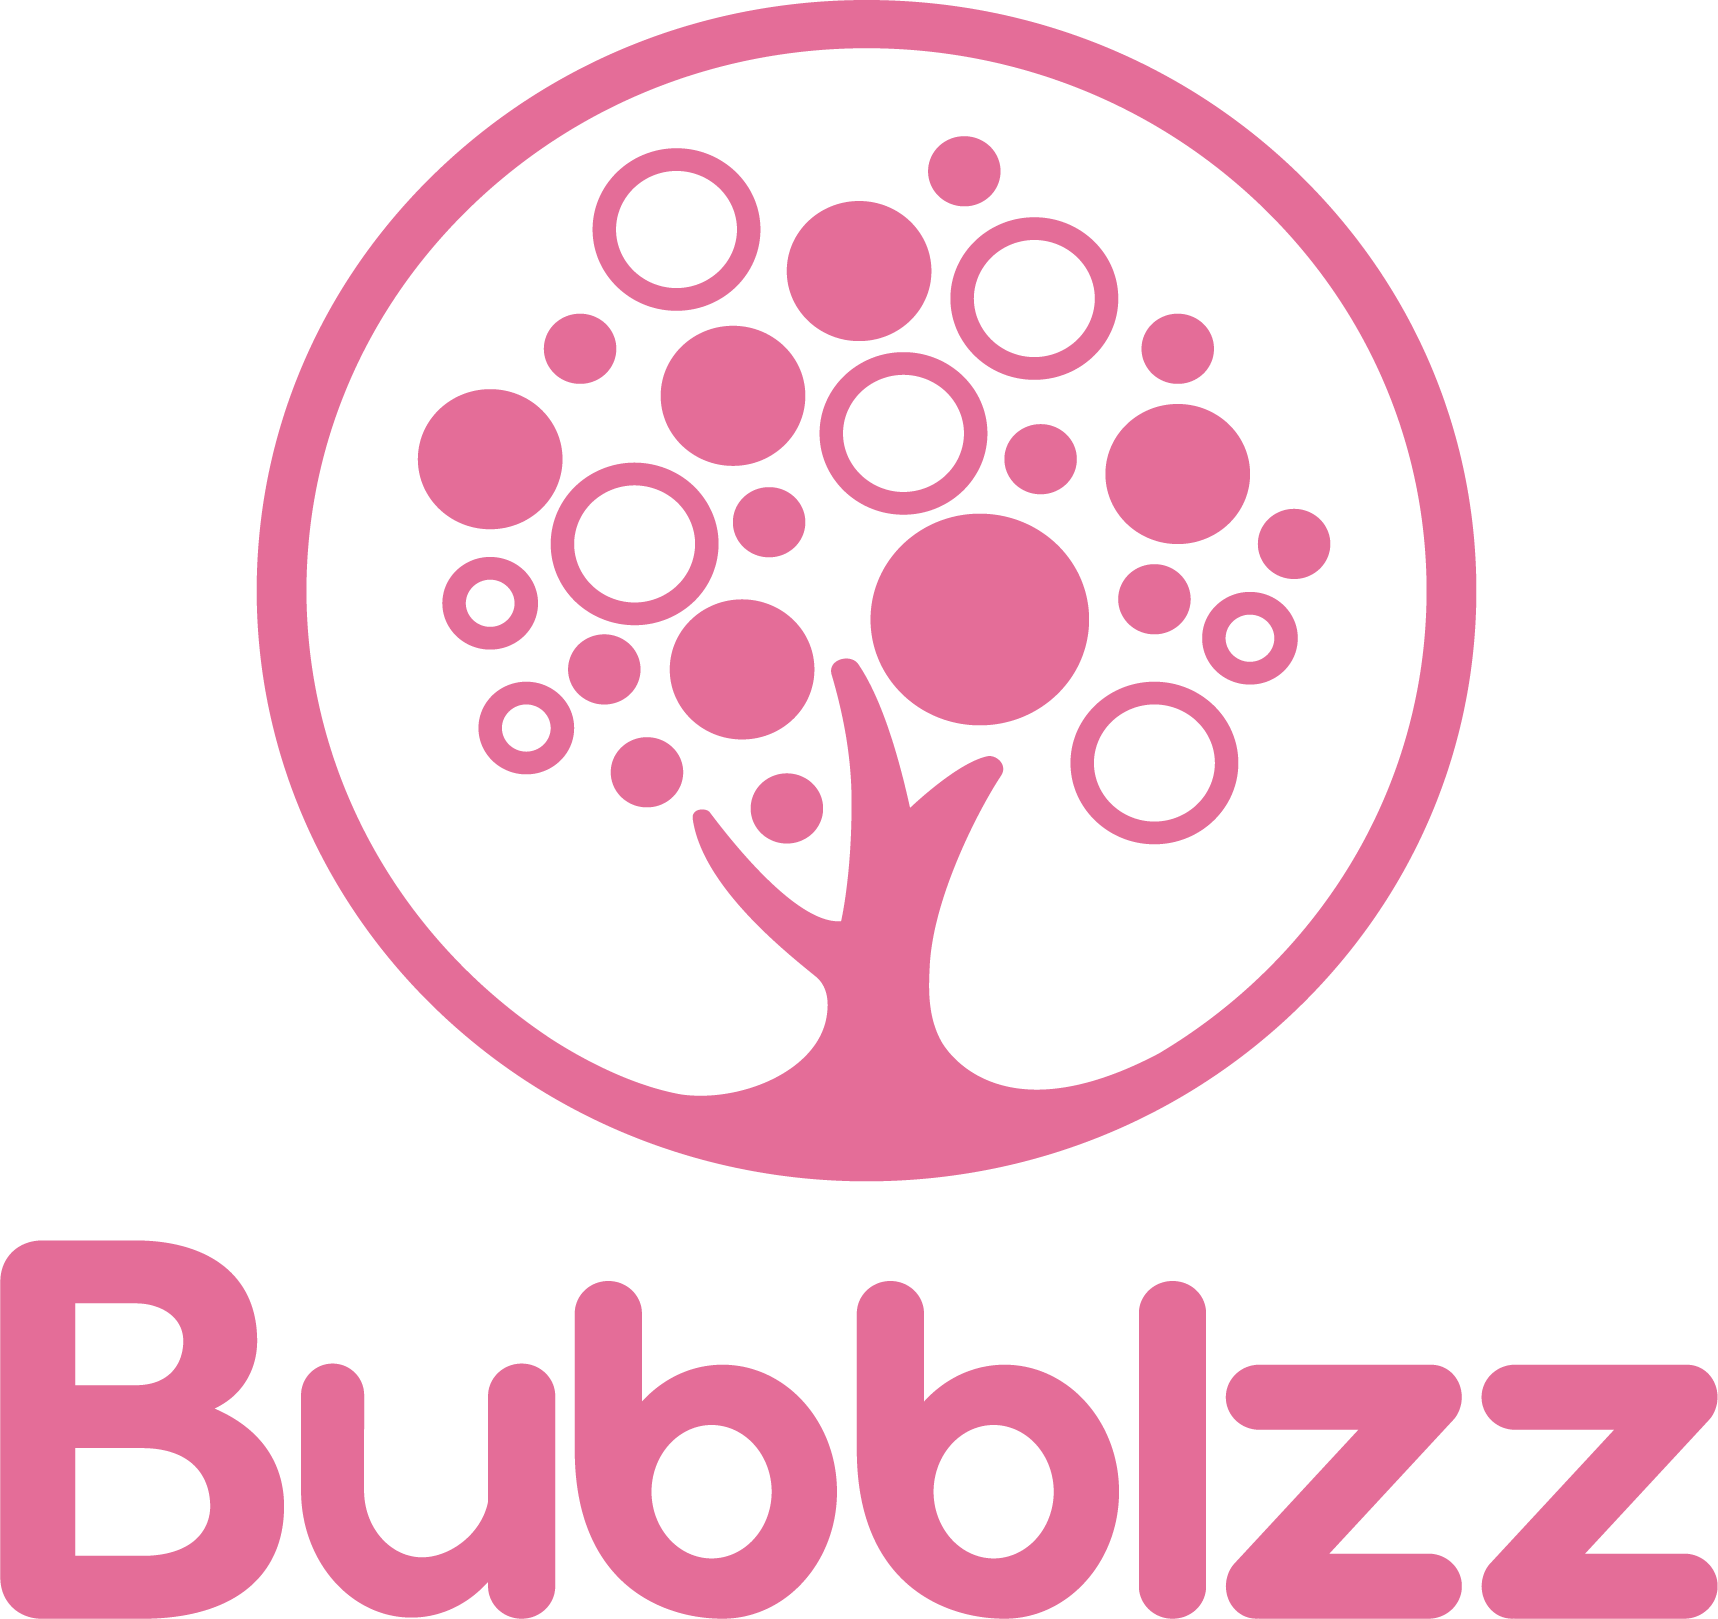 Bubblzz logo